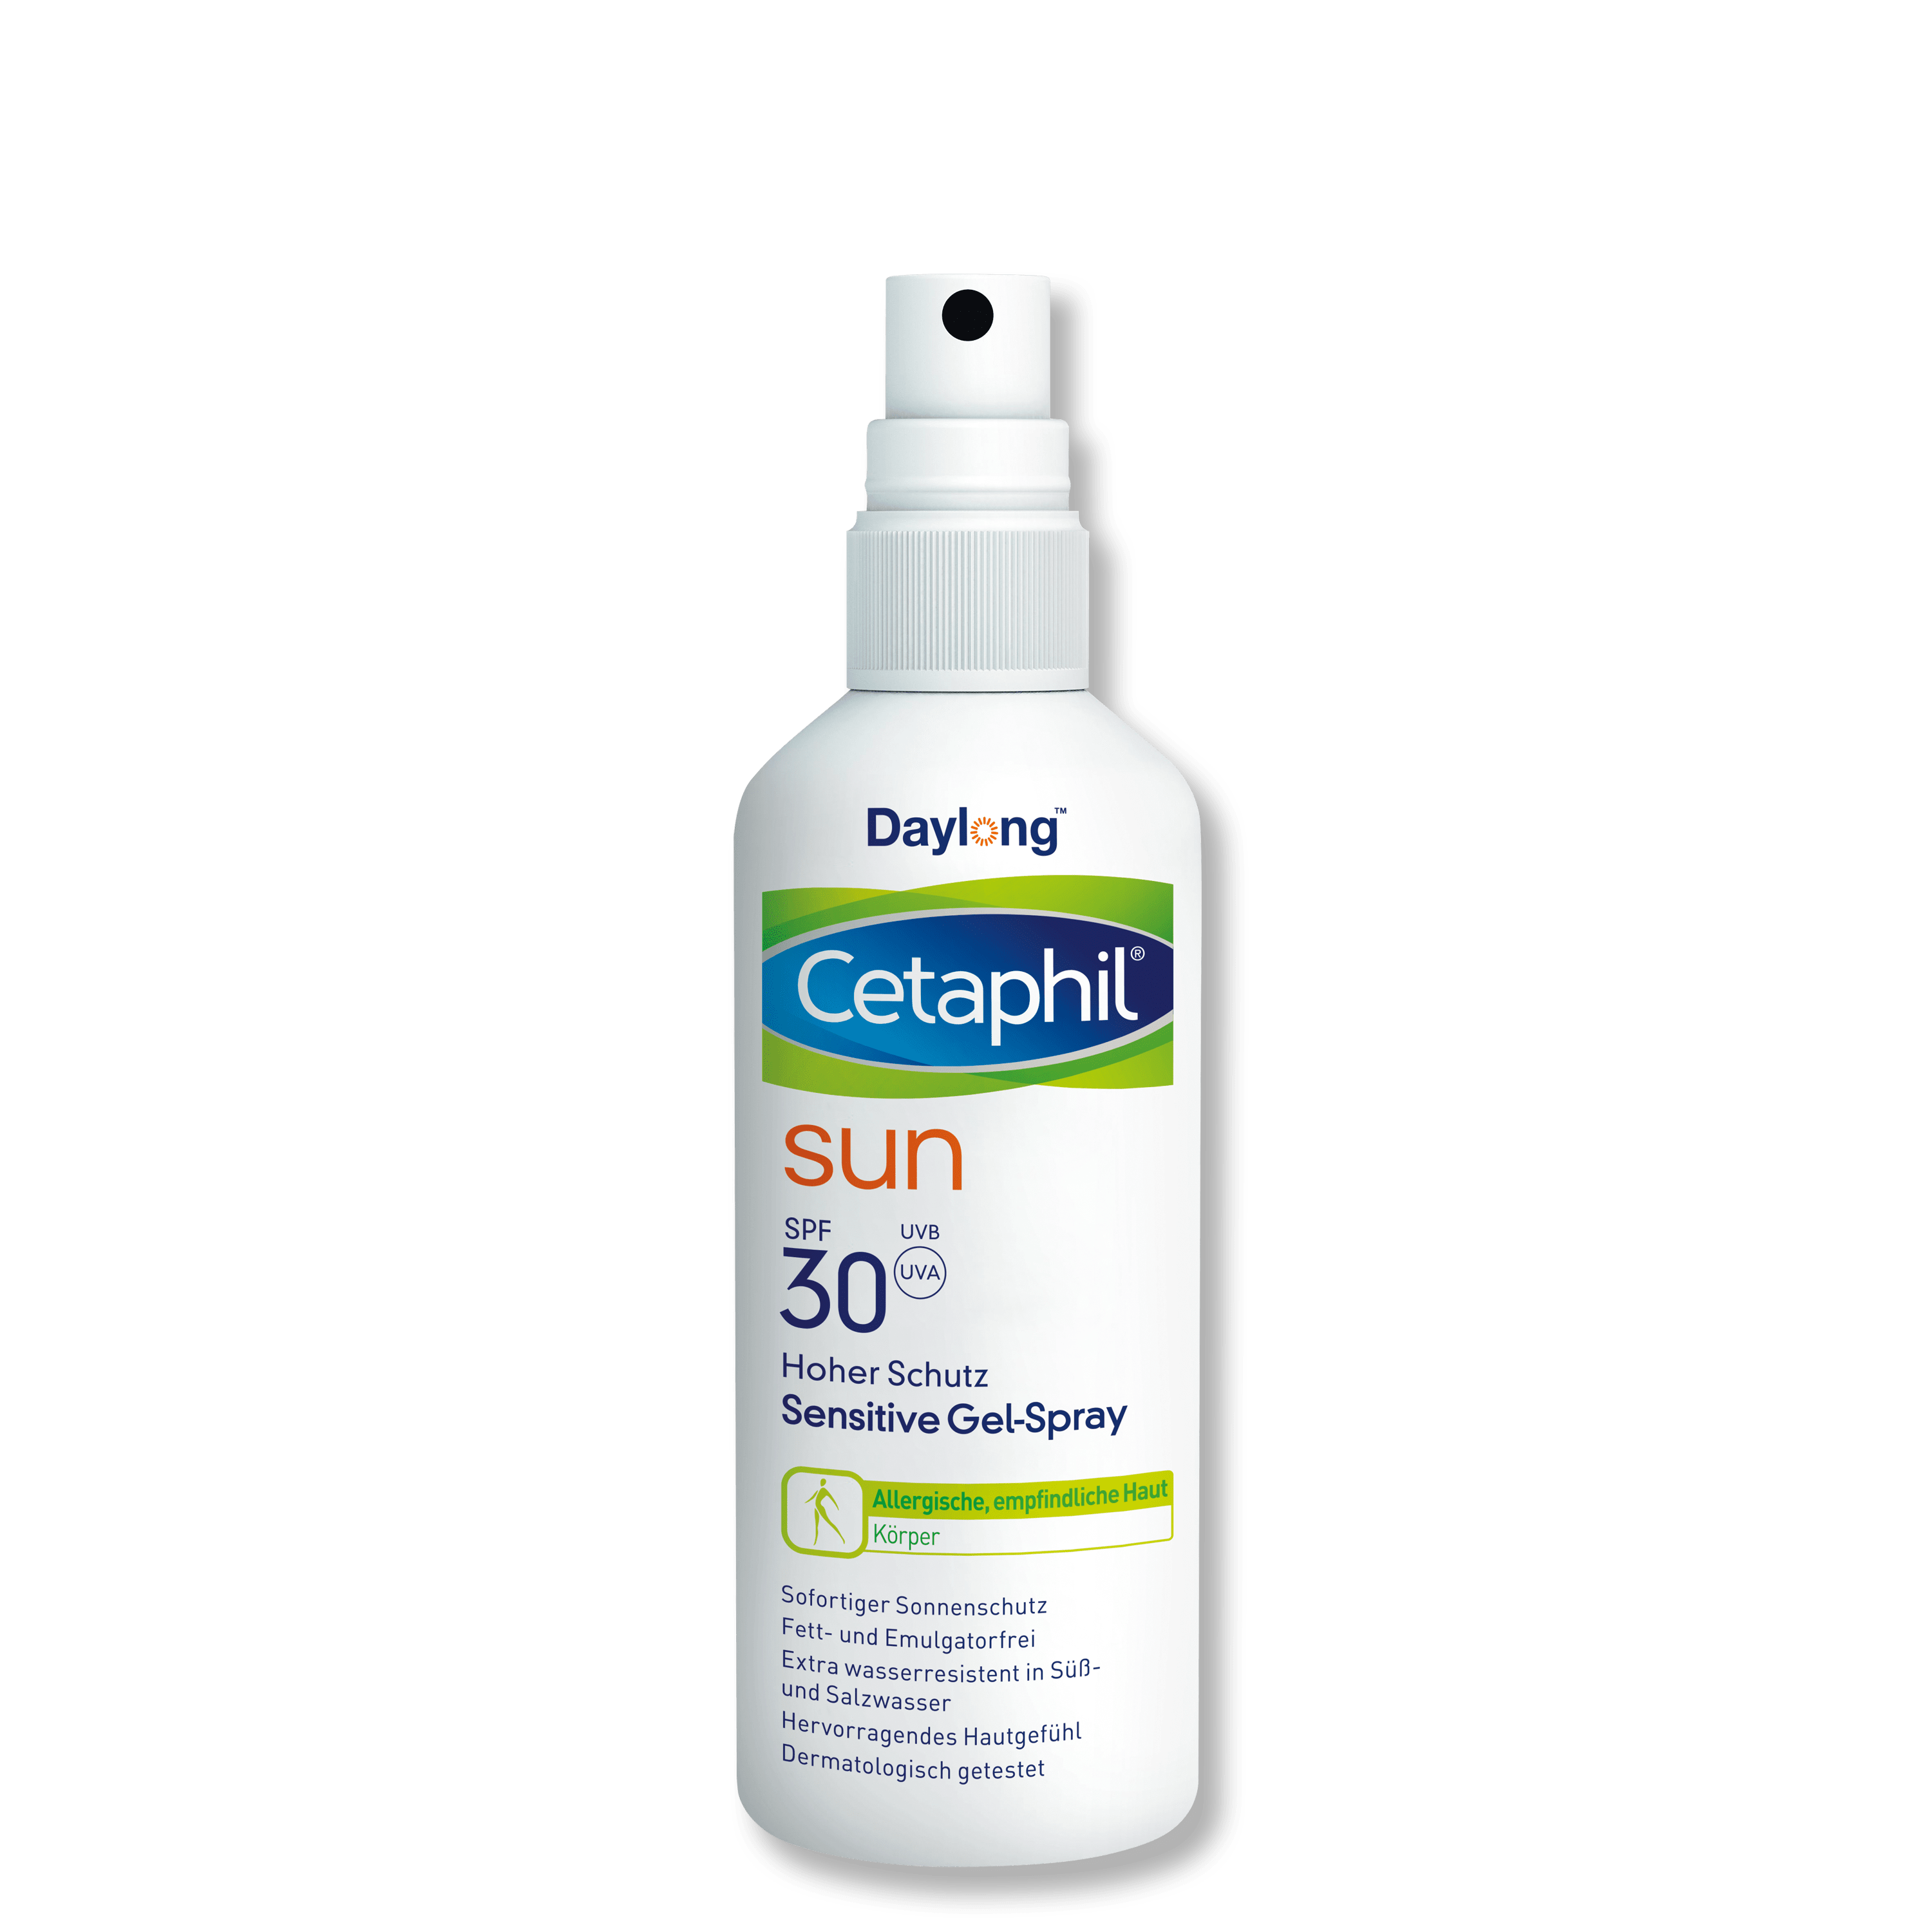 SUN Sensitive Gel-Spray SPF 30